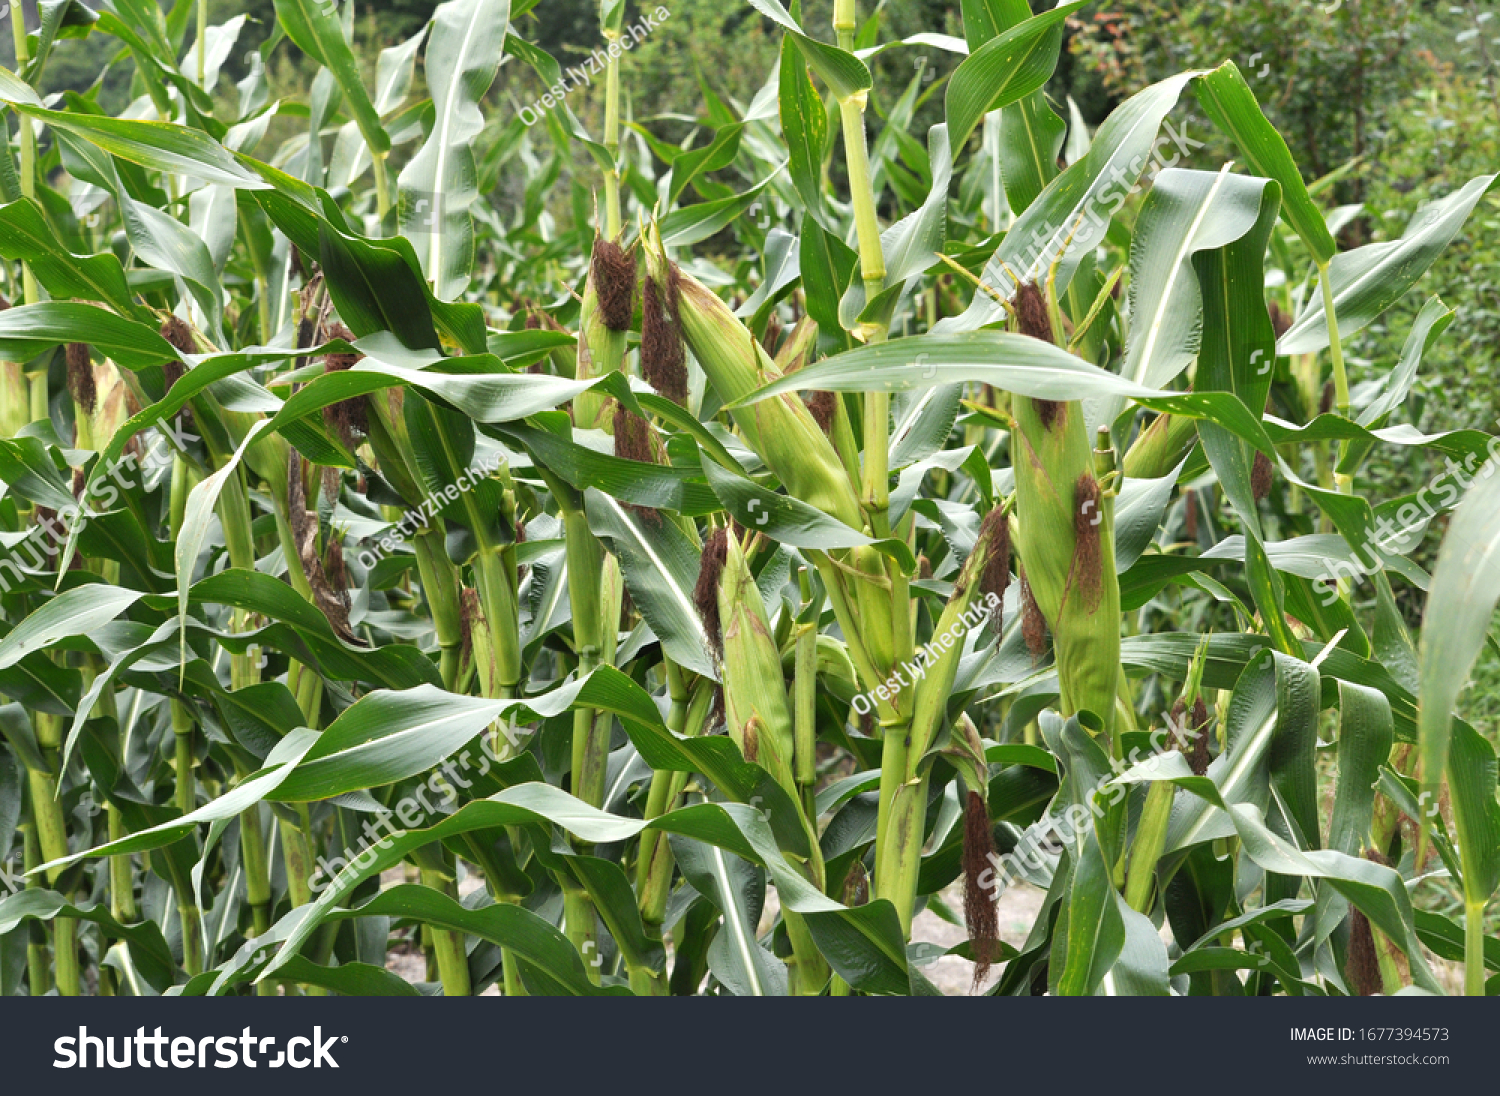 On a farmer's field, a cob ripens on a corn stalk #1677394573